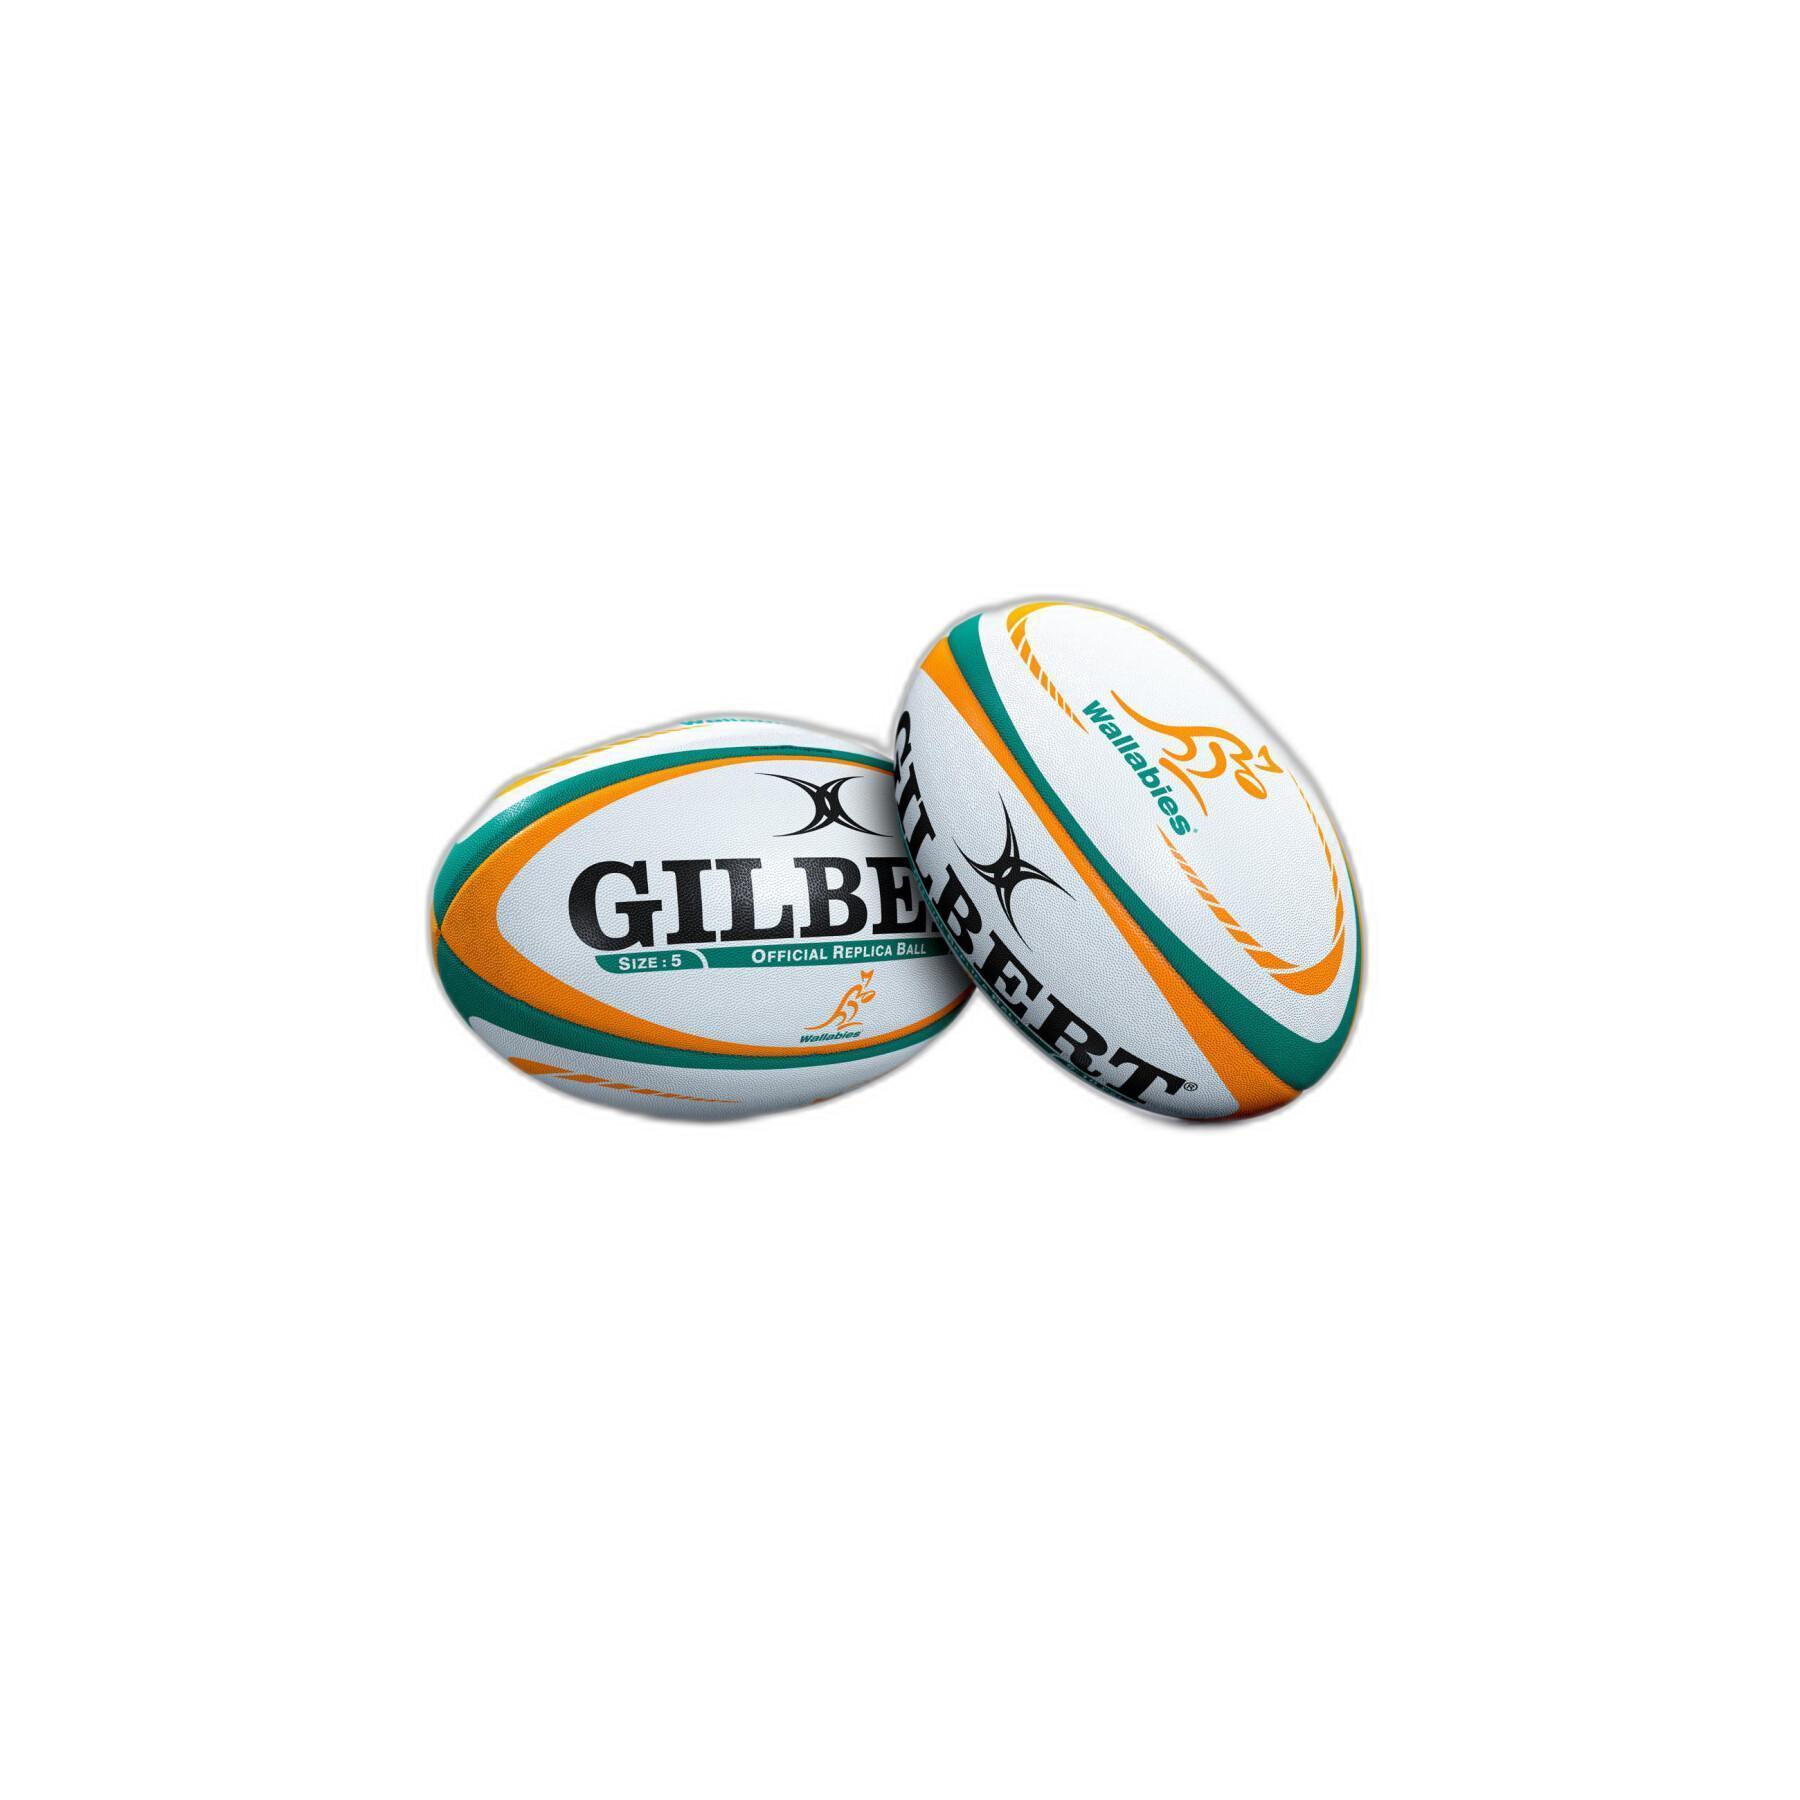 Balón de rugby Australia